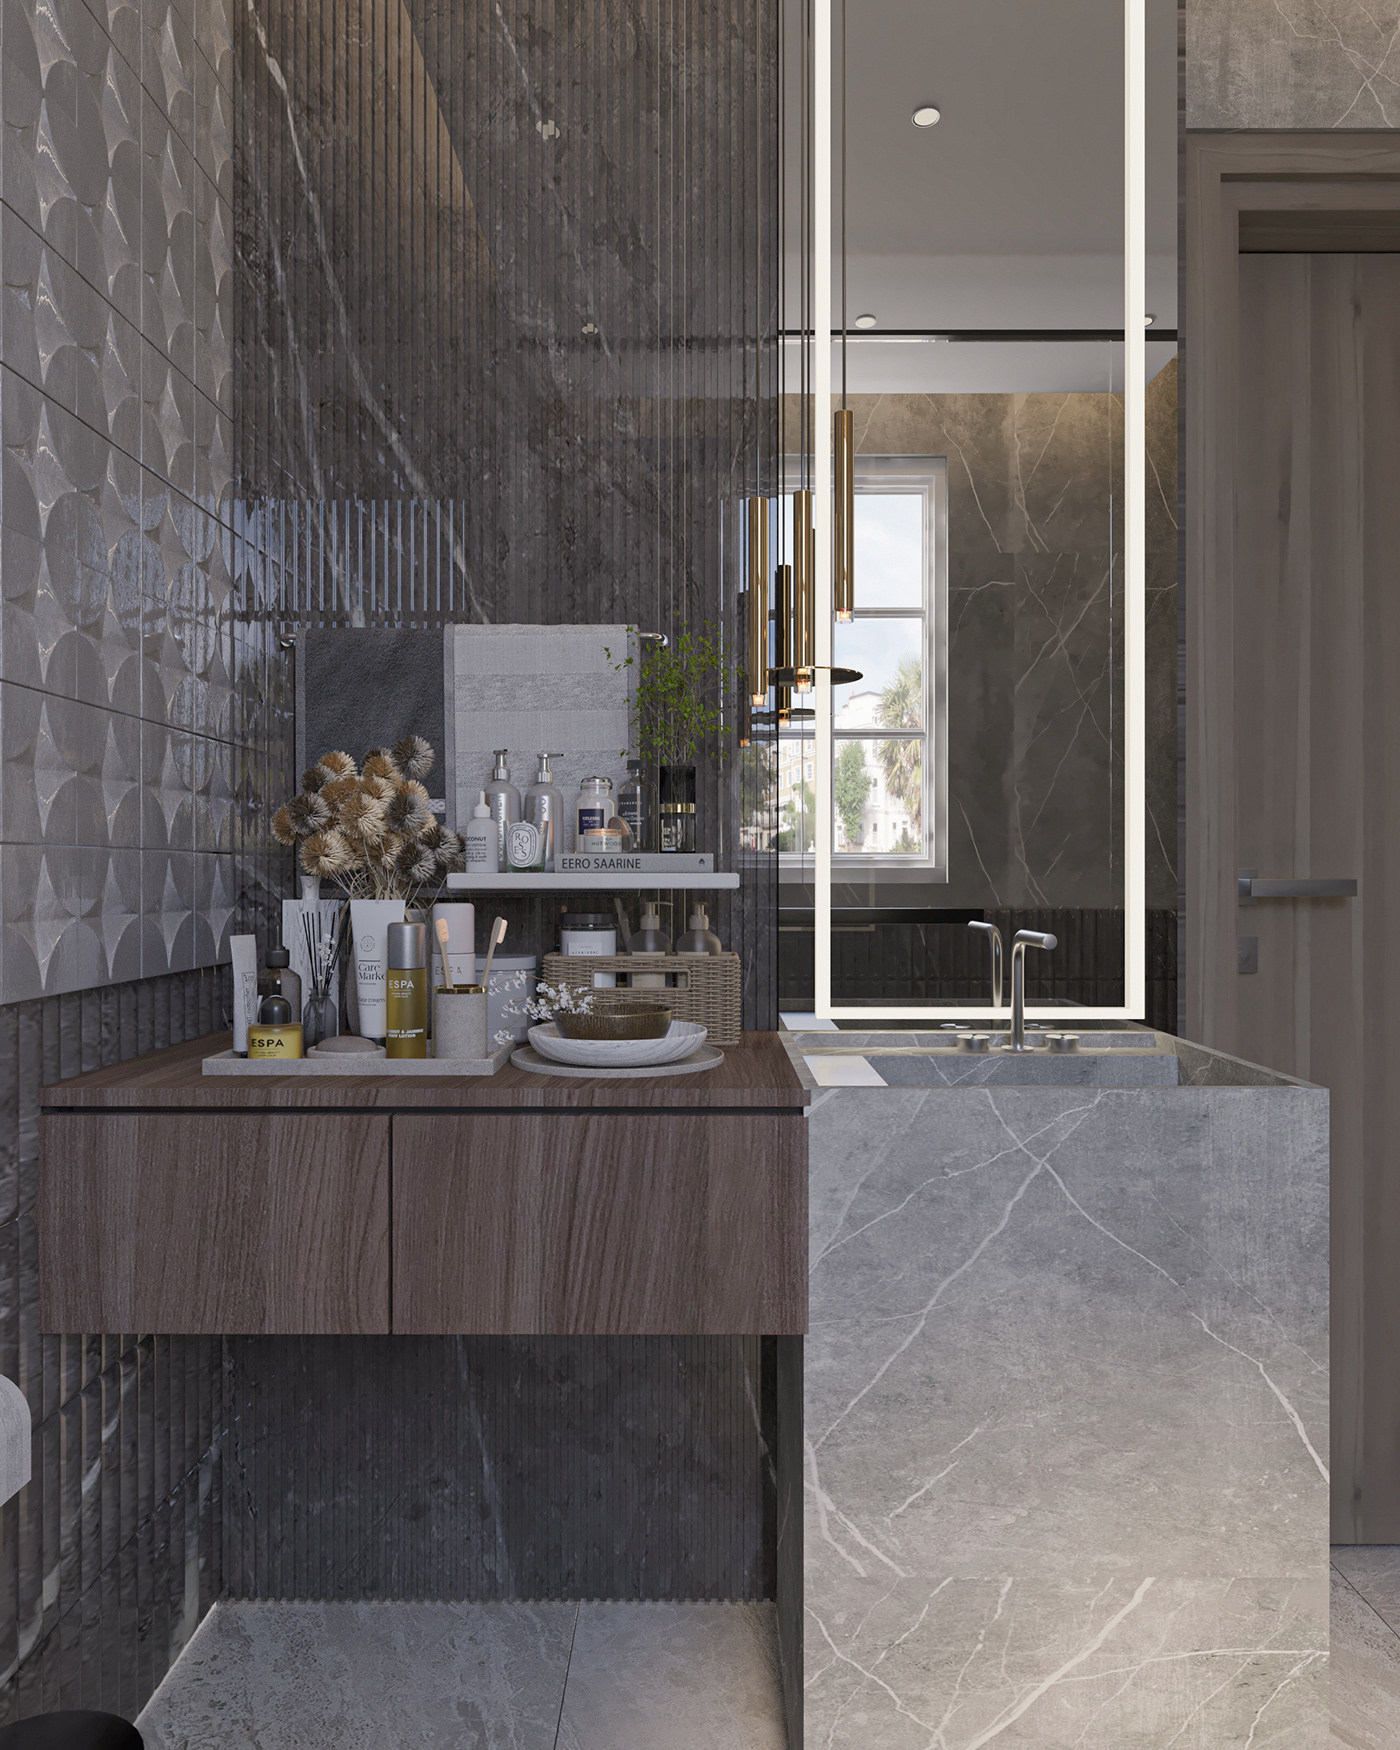 3ds max architecture bathroom design CGI corona interior design  KSA Modern Design Render visualization